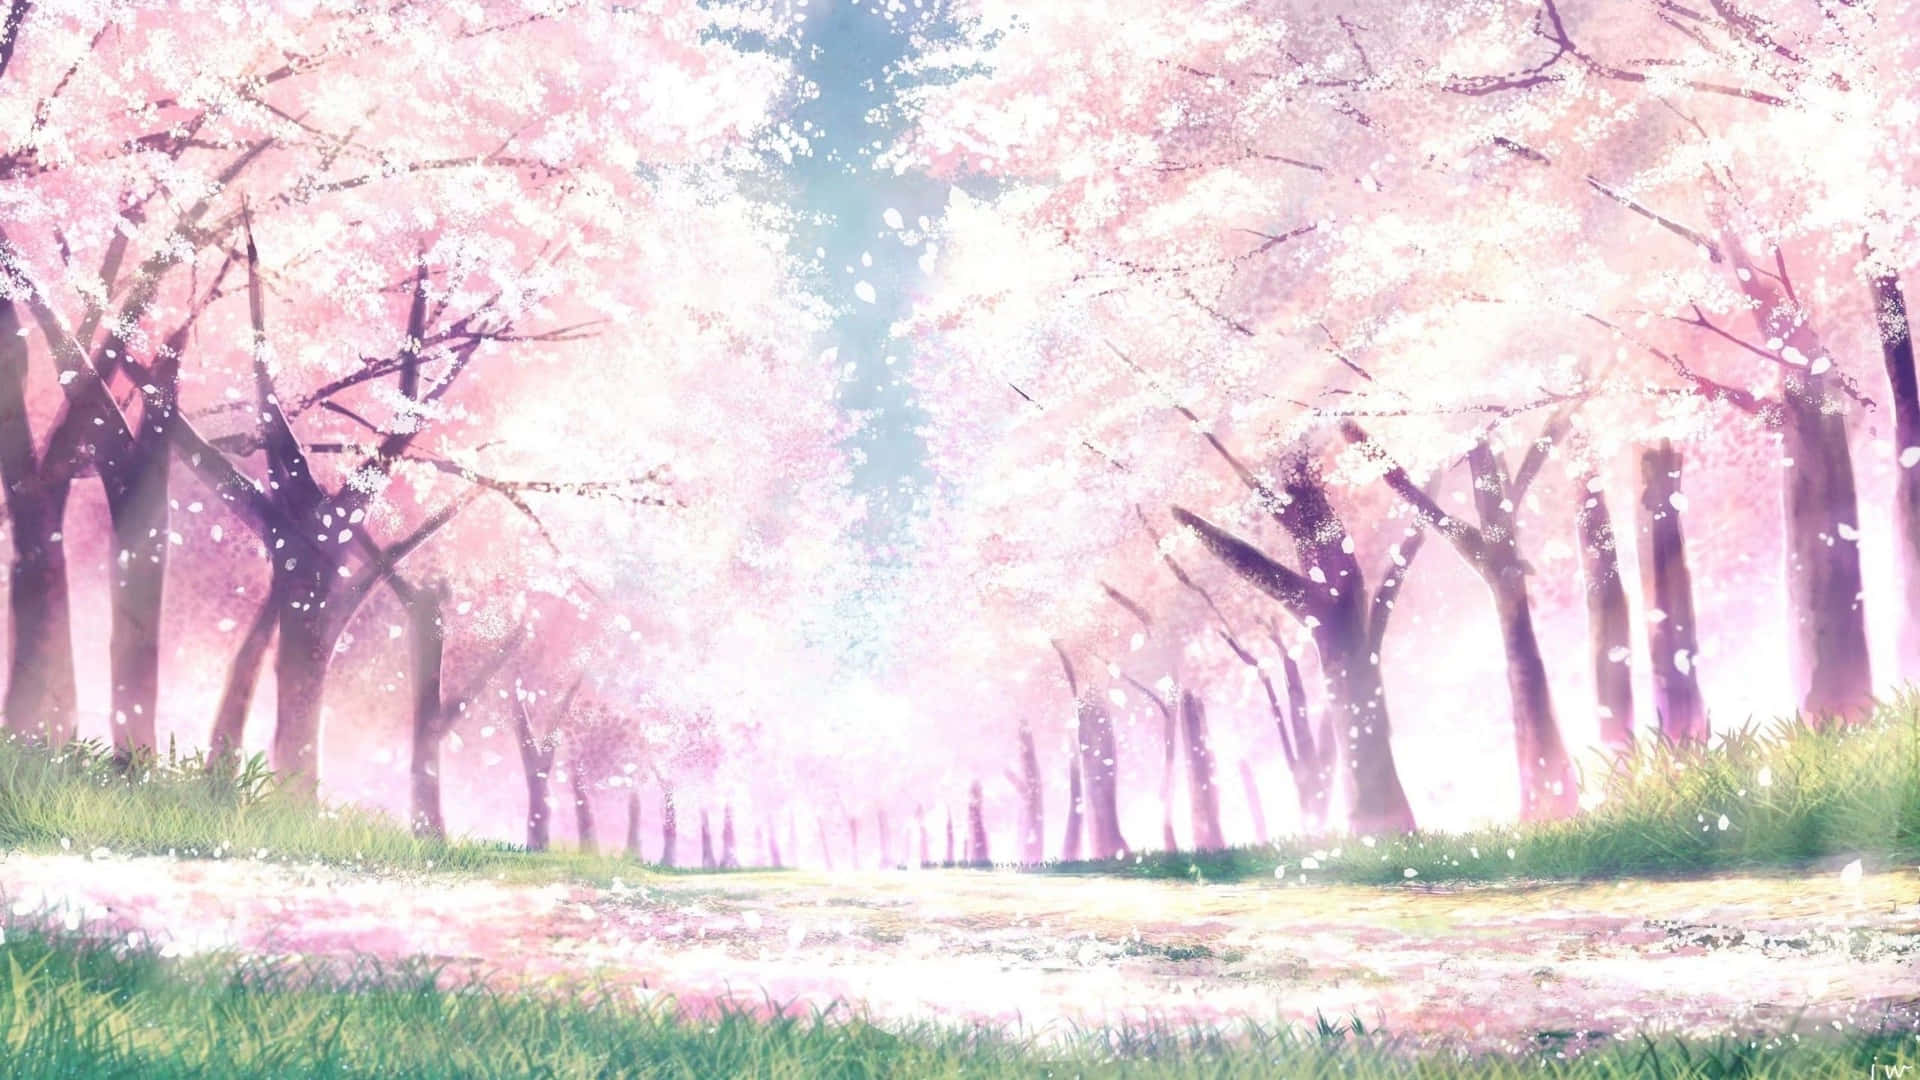 Paisagemde Anime Sakura, Em Plano Baixo. Papel de Parede